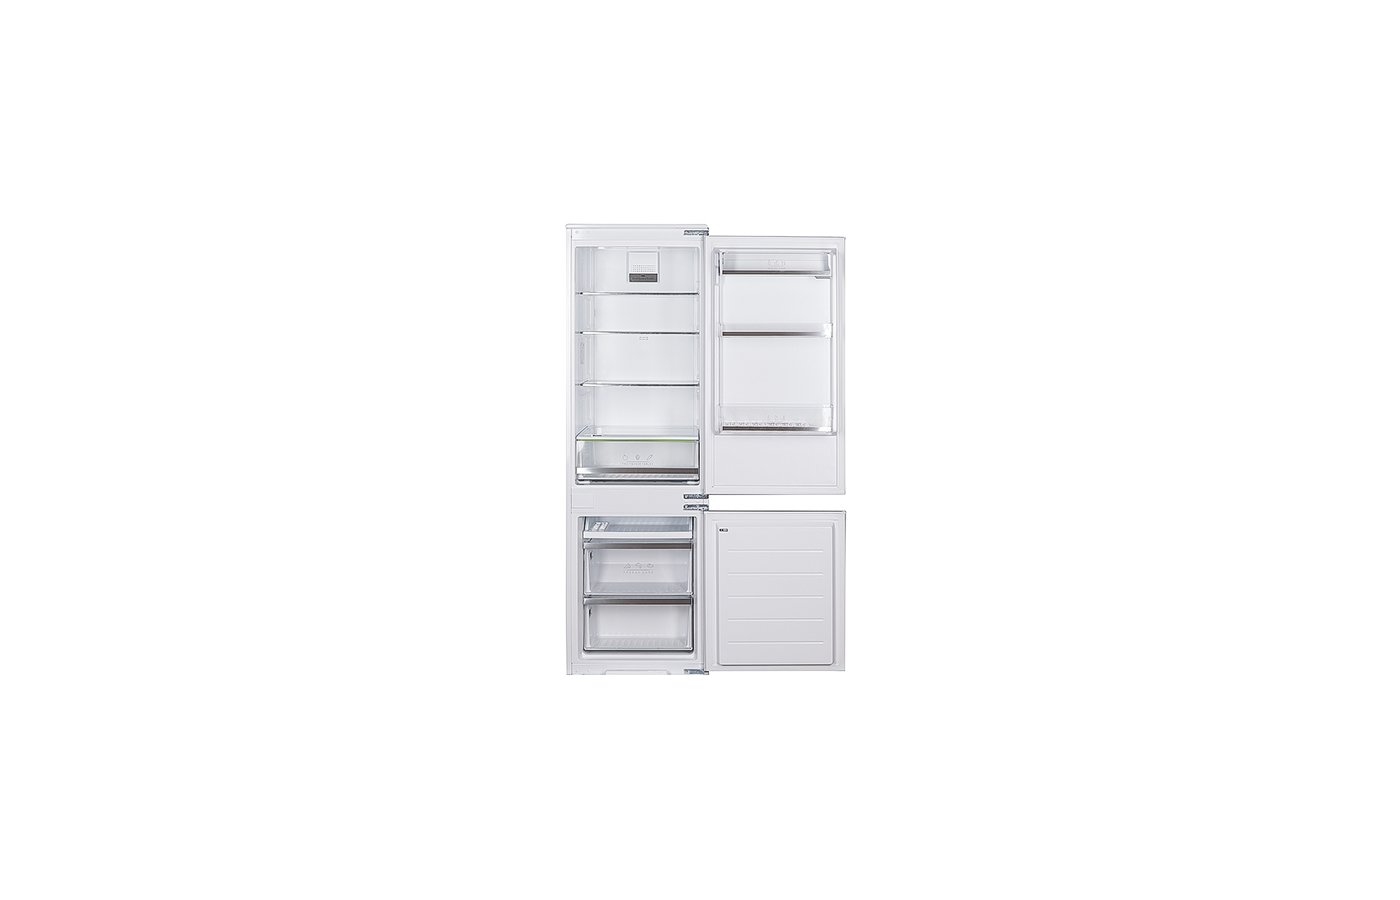 Холодильник leran bir 2705 nf. Встраиваемый холодильник Leran bir 2705 NF. Встраиваемый холодильник Leran bir 2705 NF, белый. Встраиваемый холодильник Leran bir 2705 NF схема встраивания.